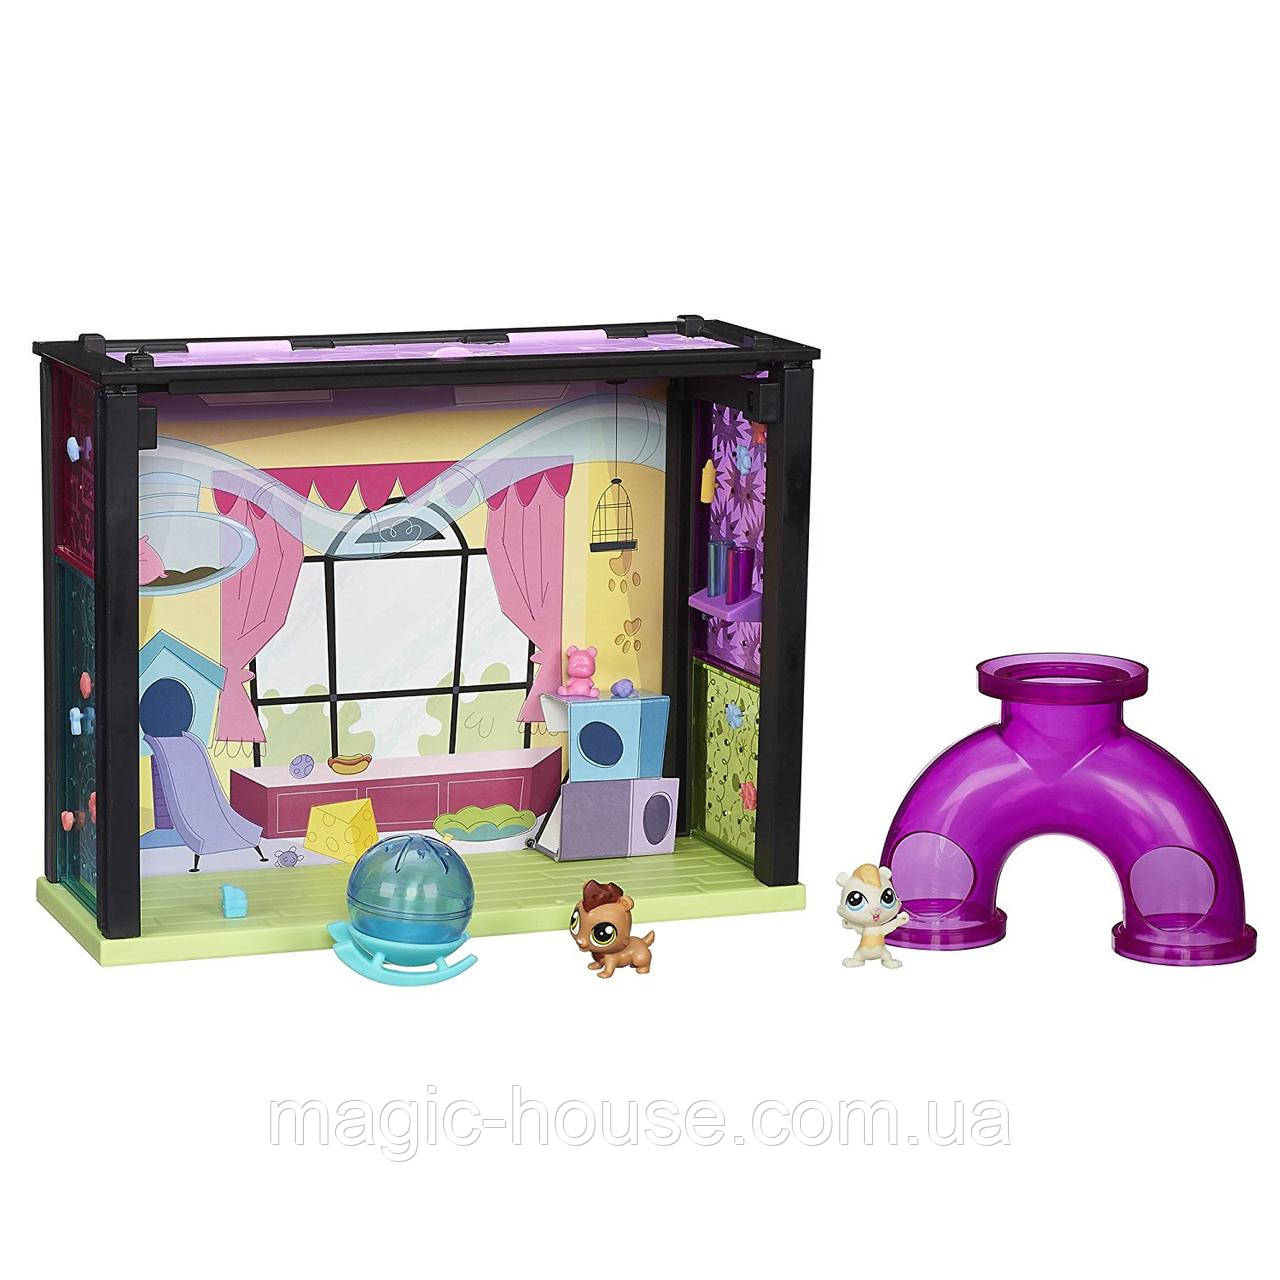 Littlest Pet Shop Игровой набор Стеклянная комната Mаленький Зоомагазин Литл Пет Шоп Pet-acular Fun Room Style